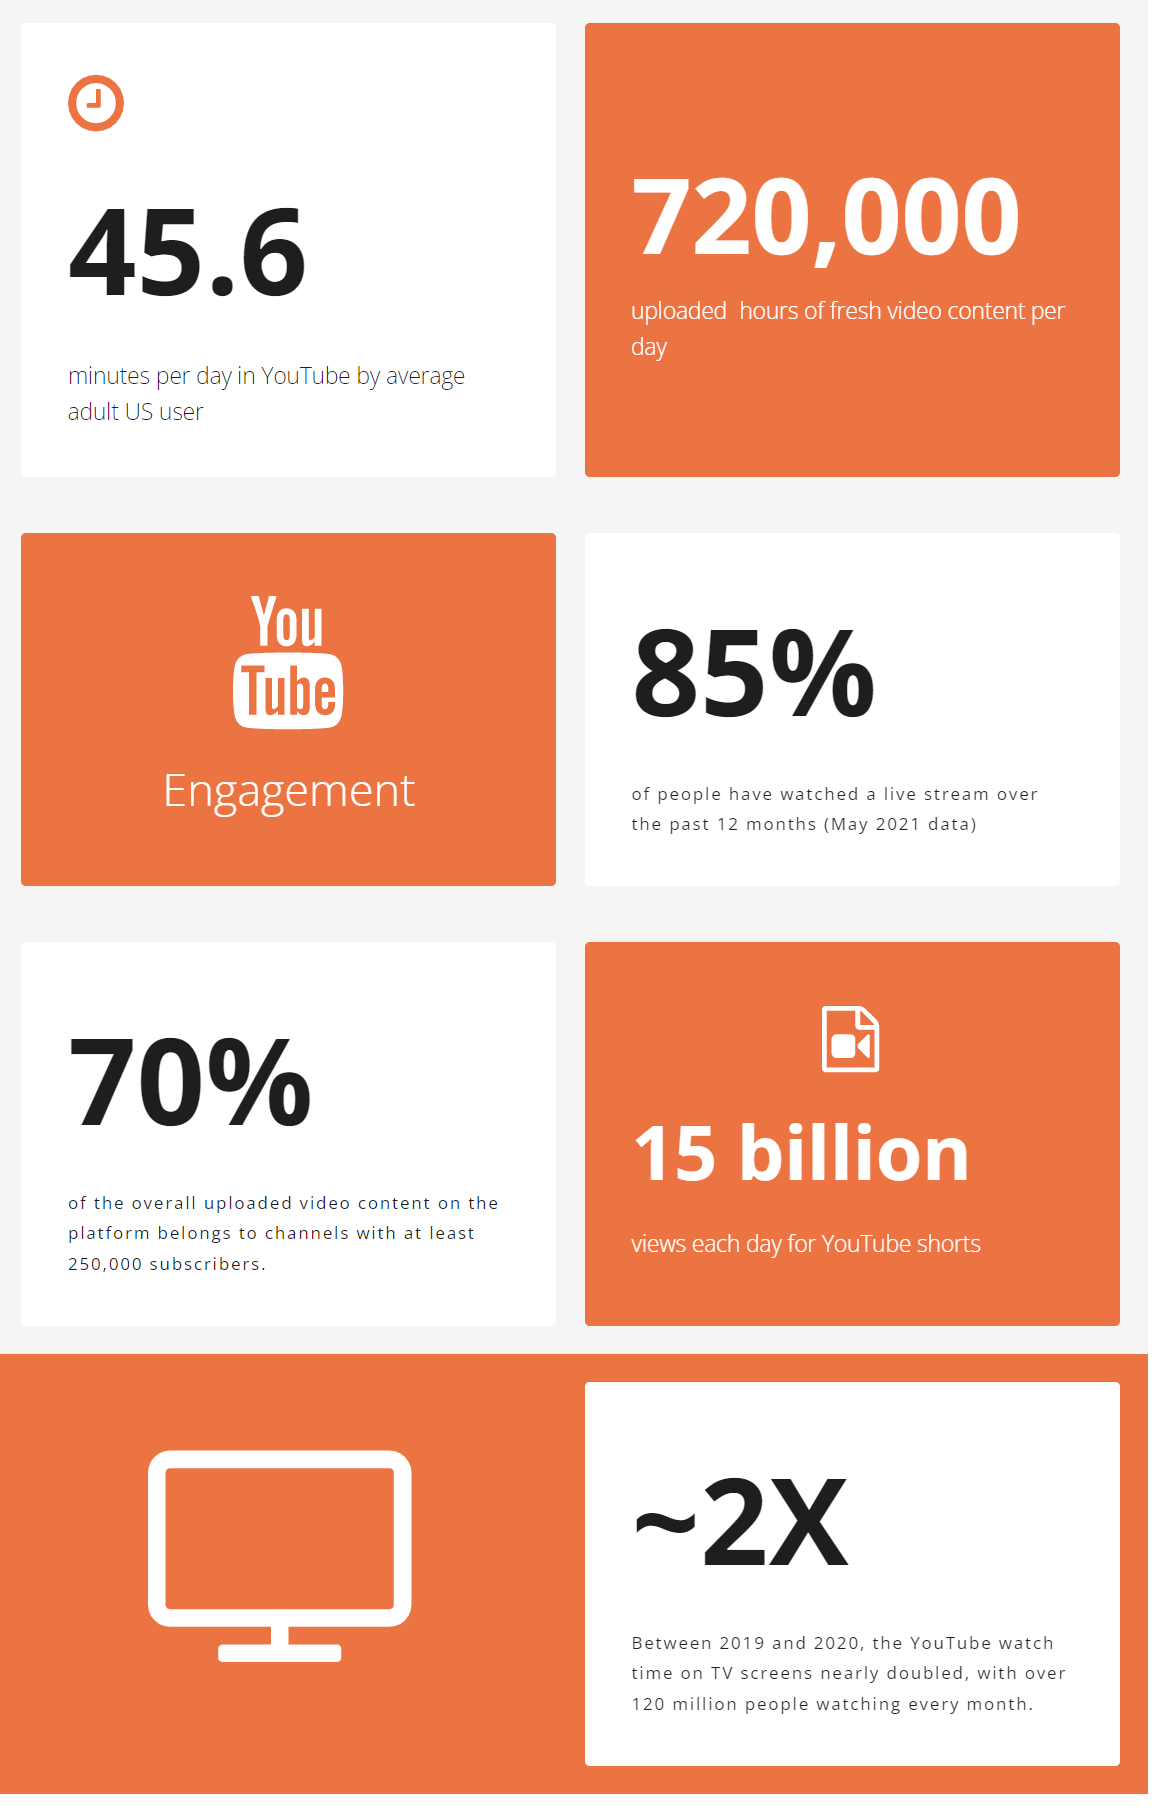 YouTube engagement statistics